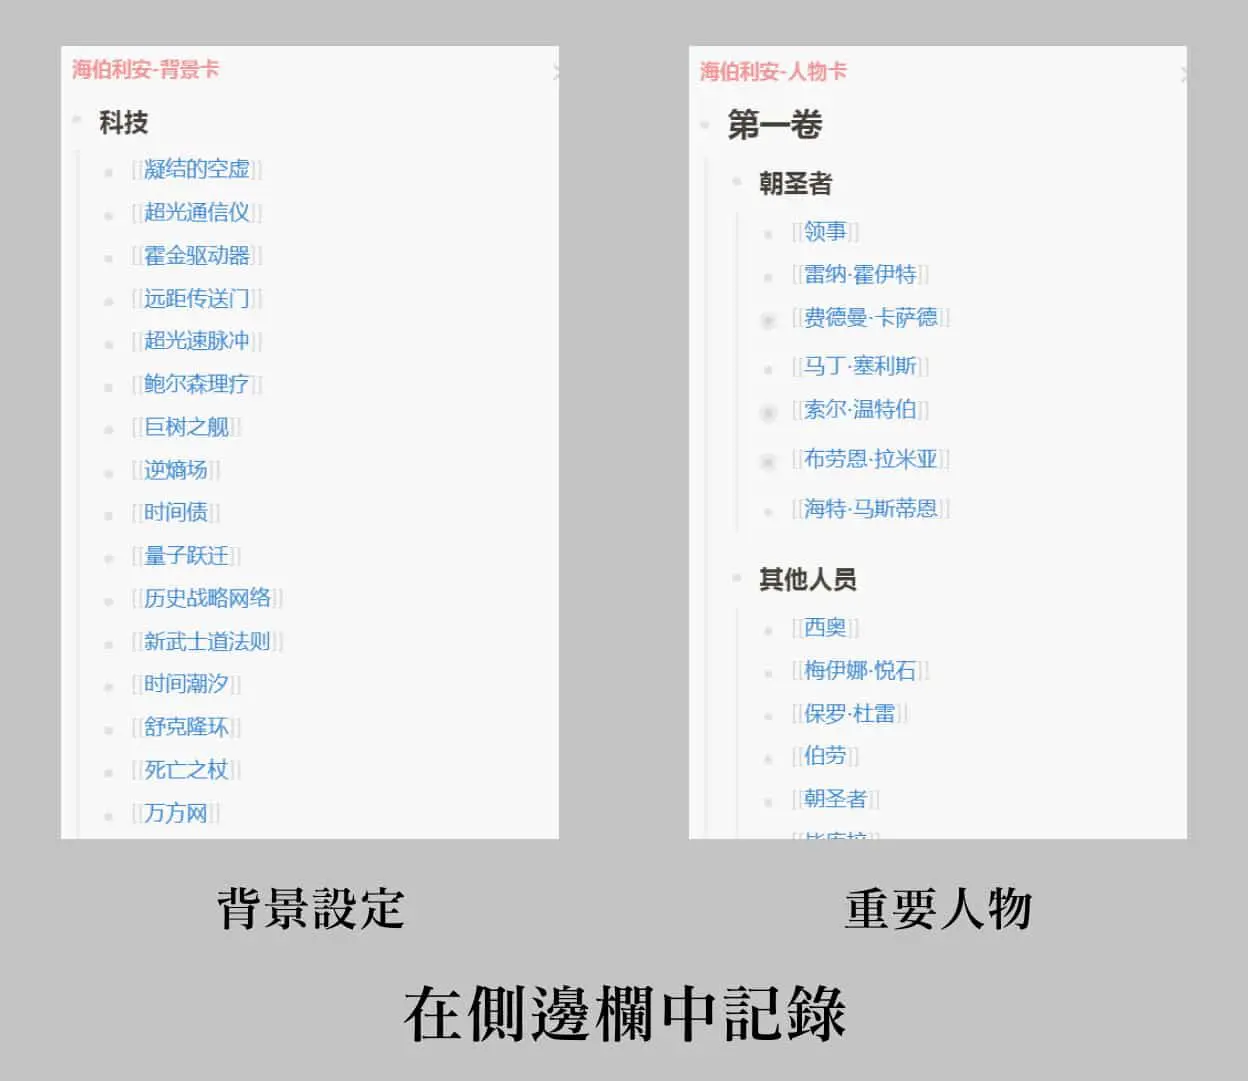 Logseq 中文教程 |  5 种用法带你用好双向链接插图32